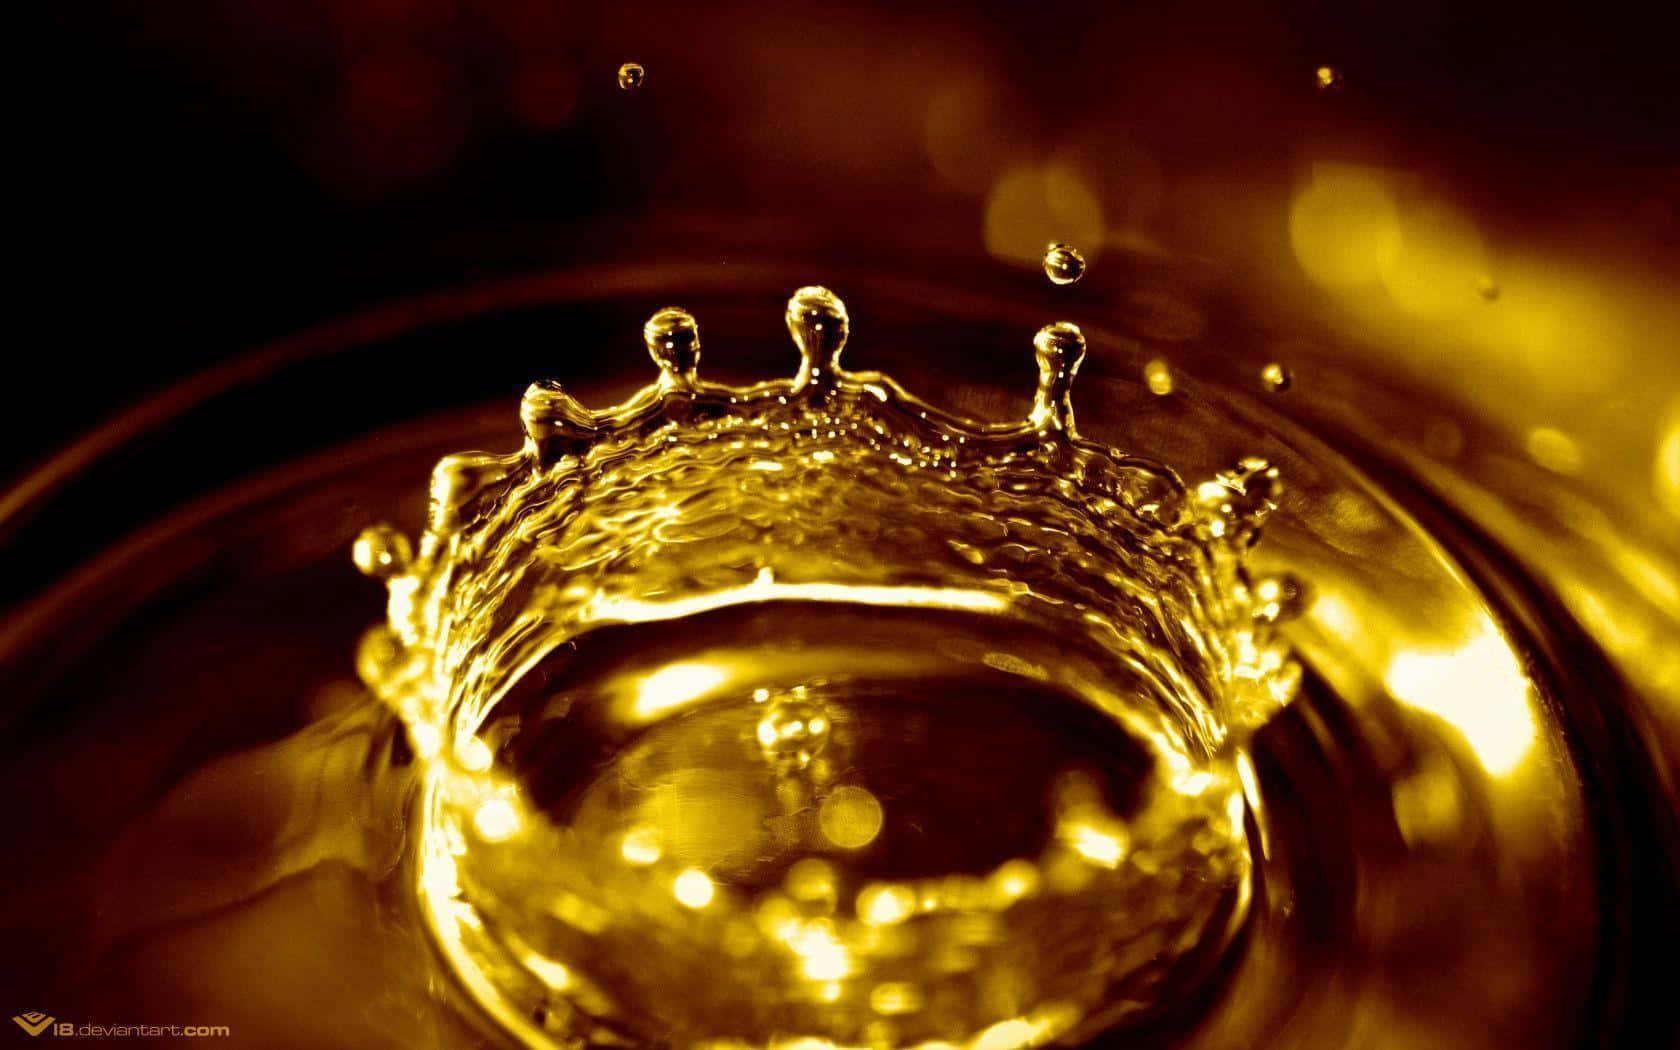 Einenahaufnahme Einer Goldenen Krone In Einem Glas.